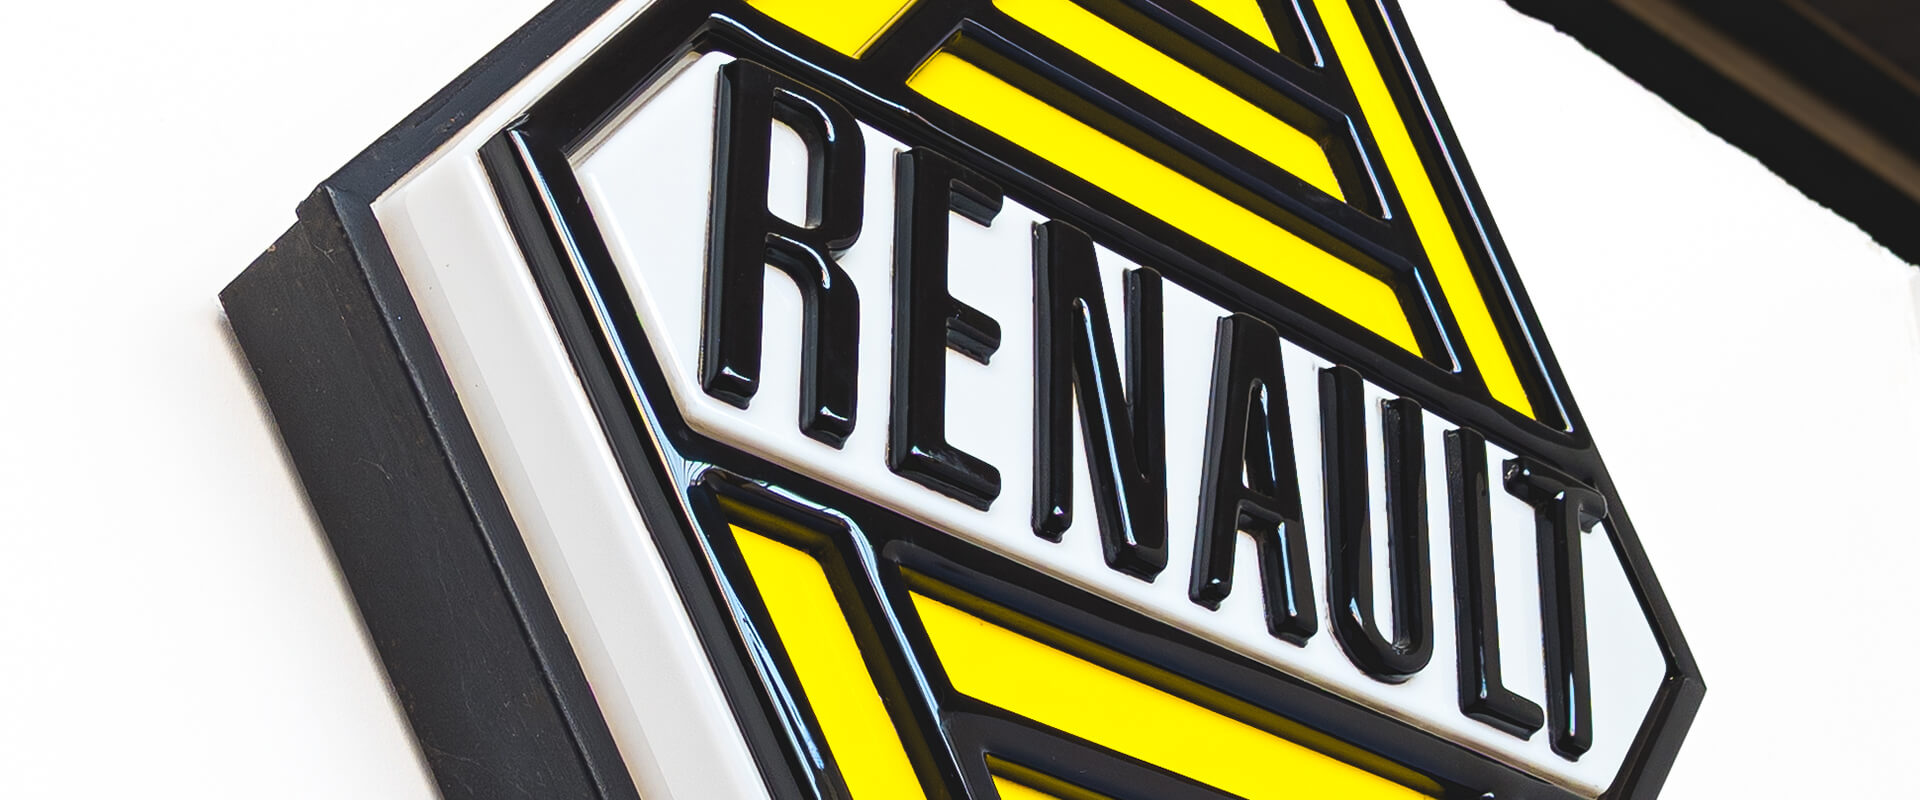 Vintage Renault sign